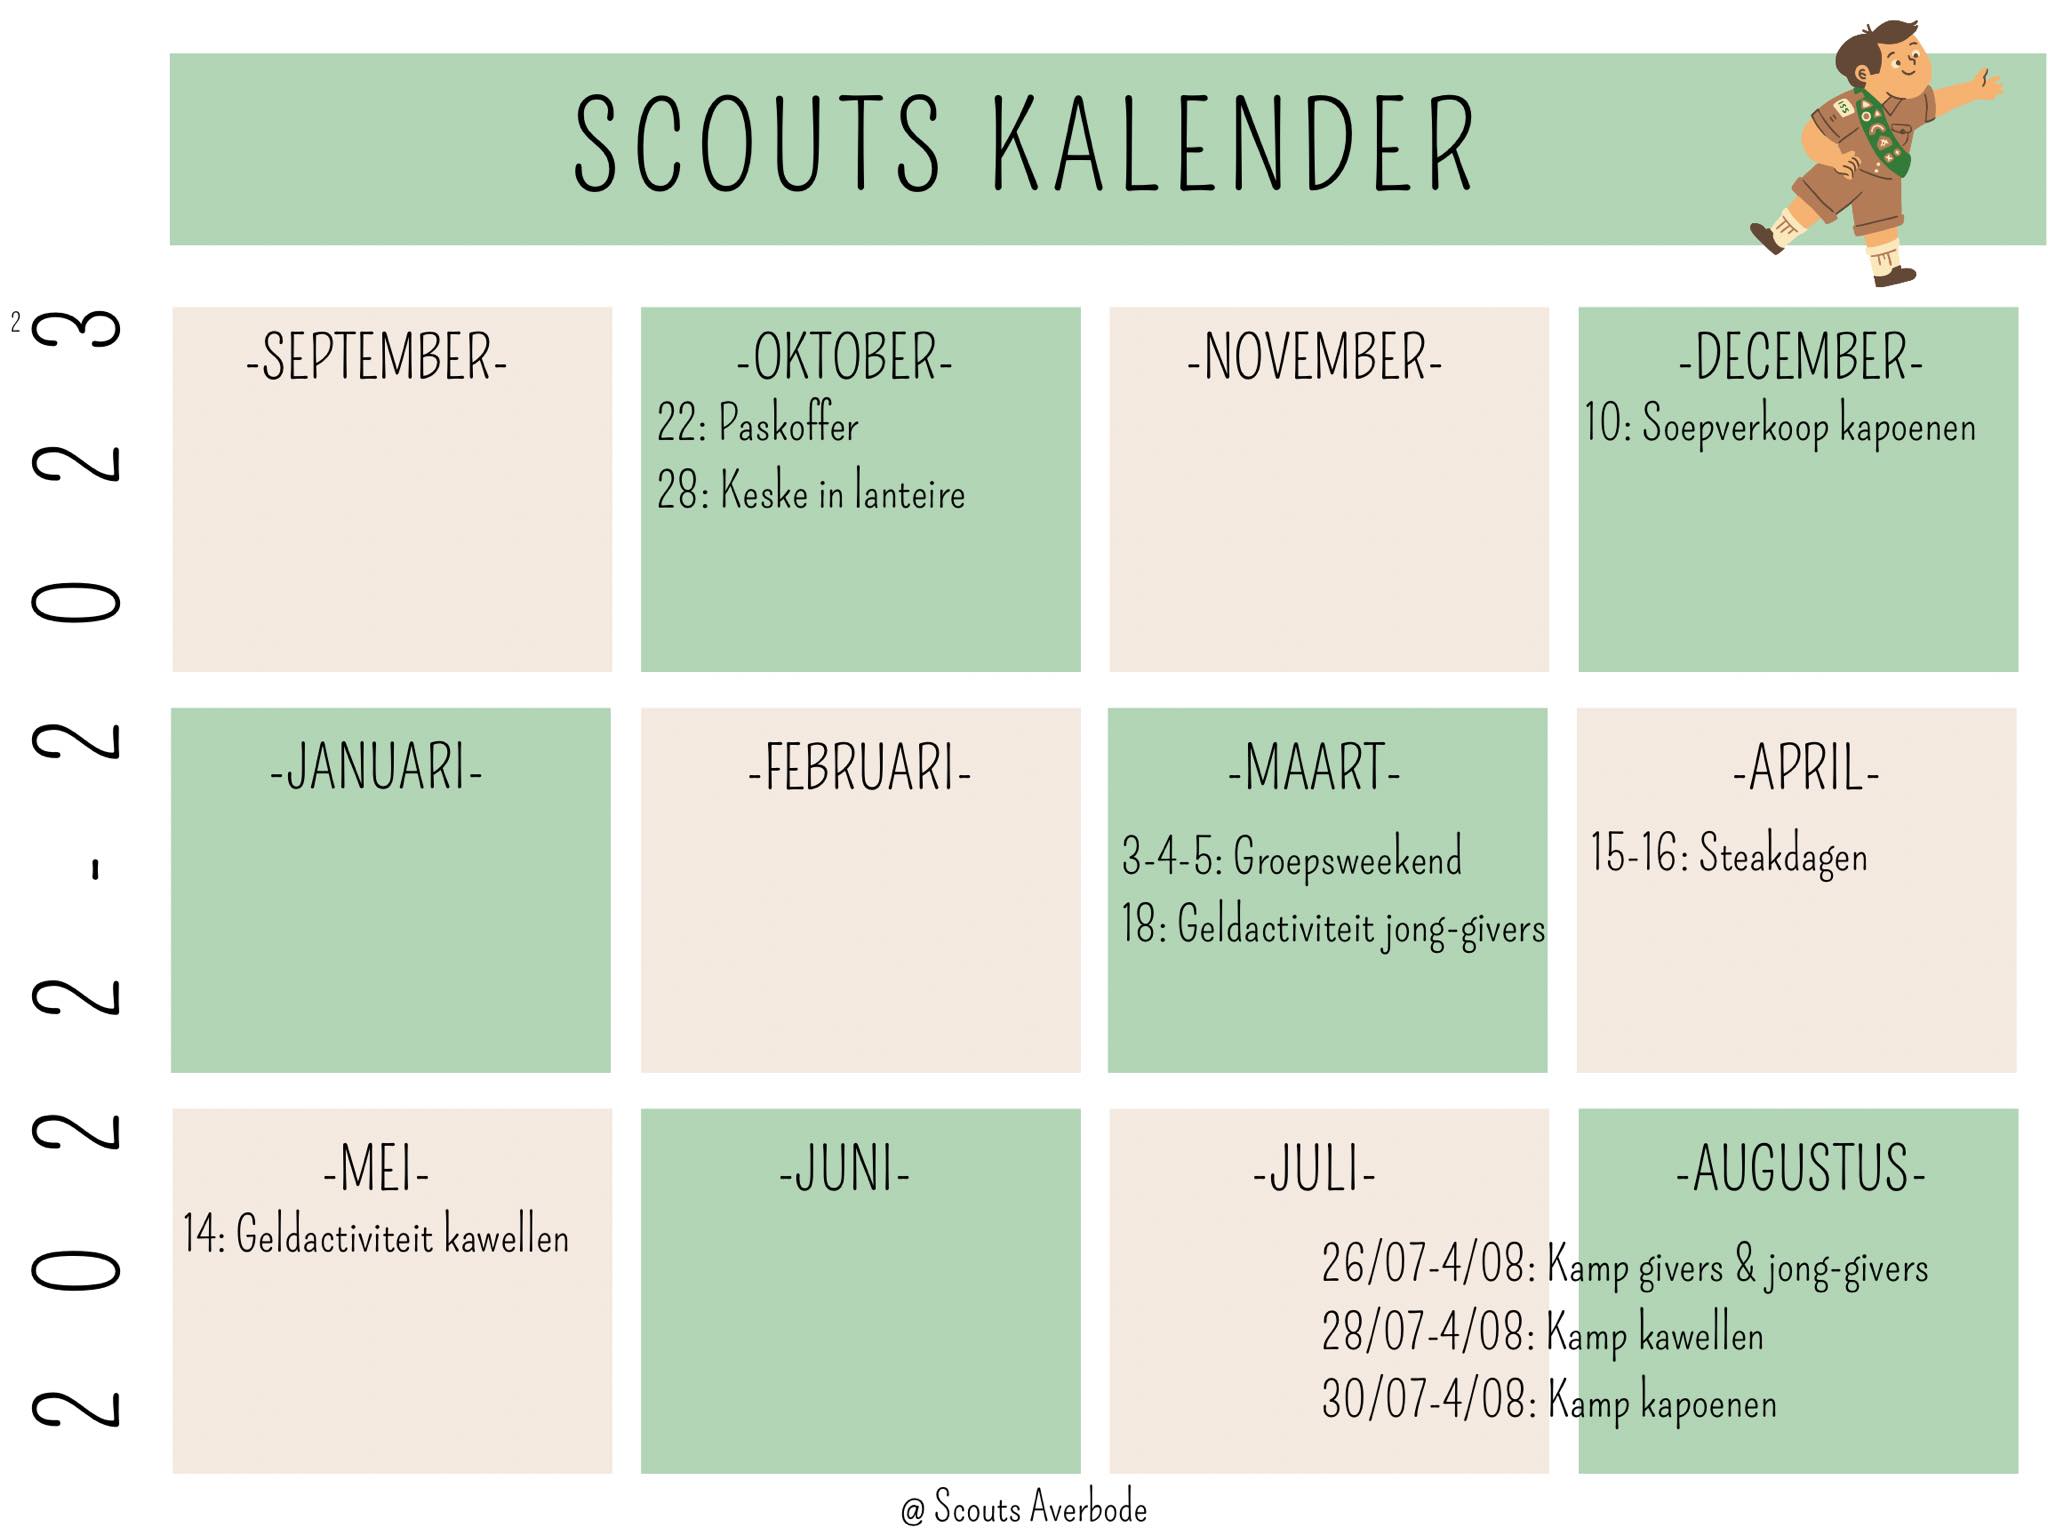 De kalender van scouts averbode